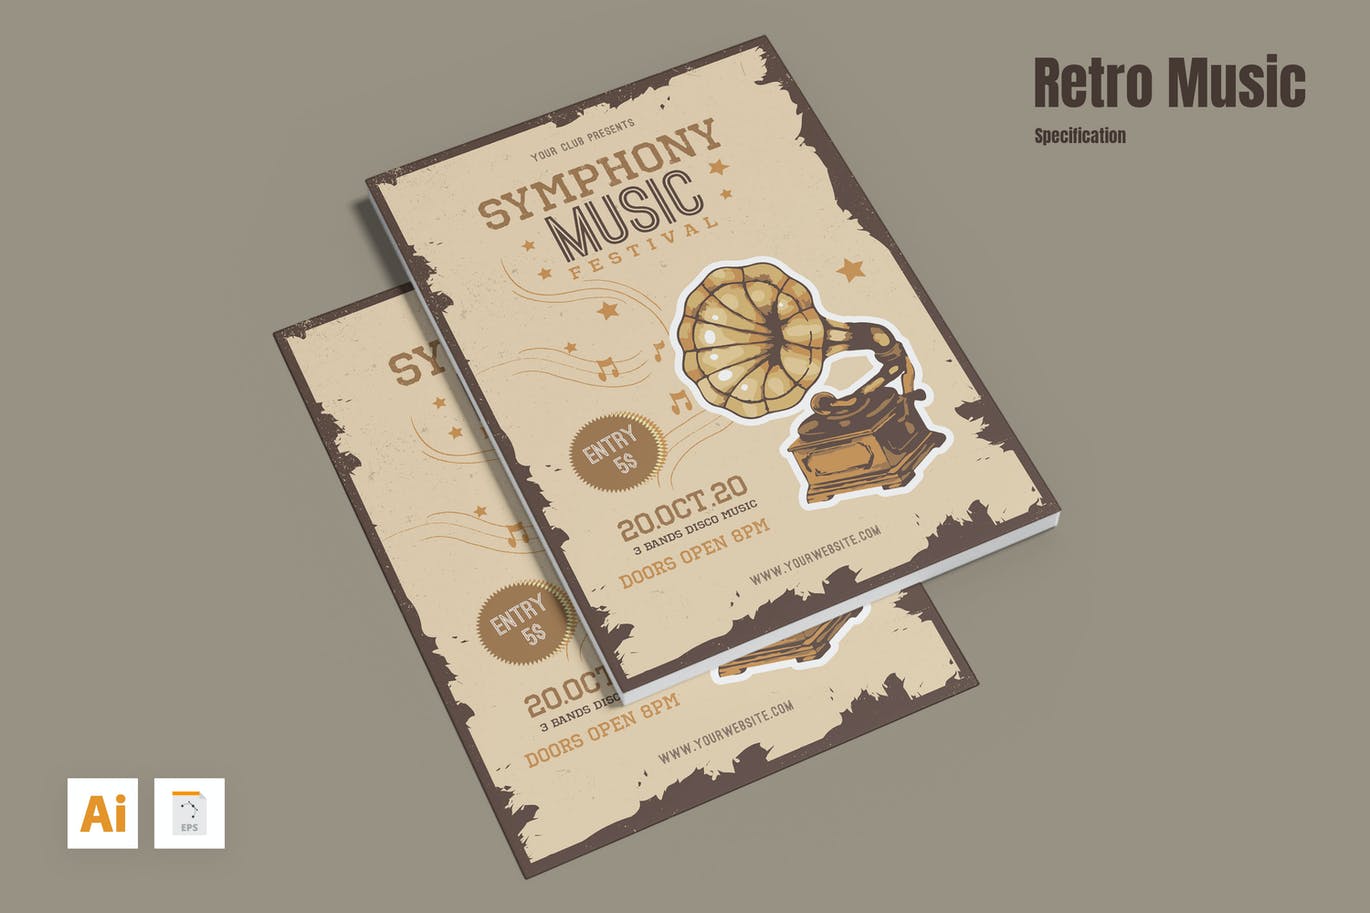 复古音乐宣传单模板 Retro Music Flyer 设计素材 第1张